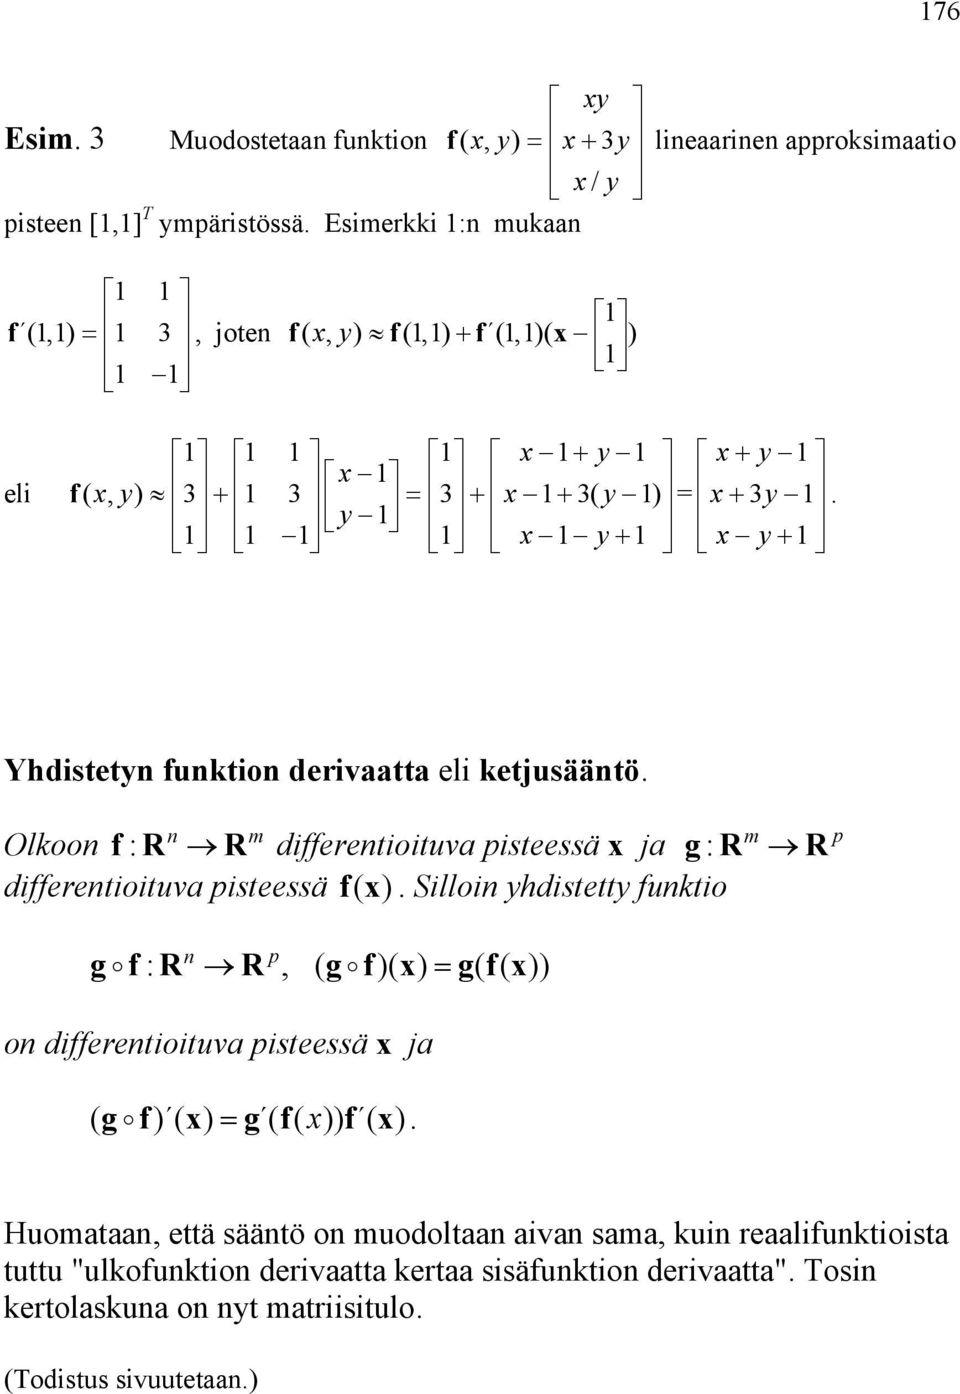 g : R m R dfferentotuva psteessä fx ( ) Sllon ydstetty funkto p g f: R n R, ( g f) g( fx ( )) on dfferentotuva psteessä x ja ( g f) g ( f) f Huomataan, että